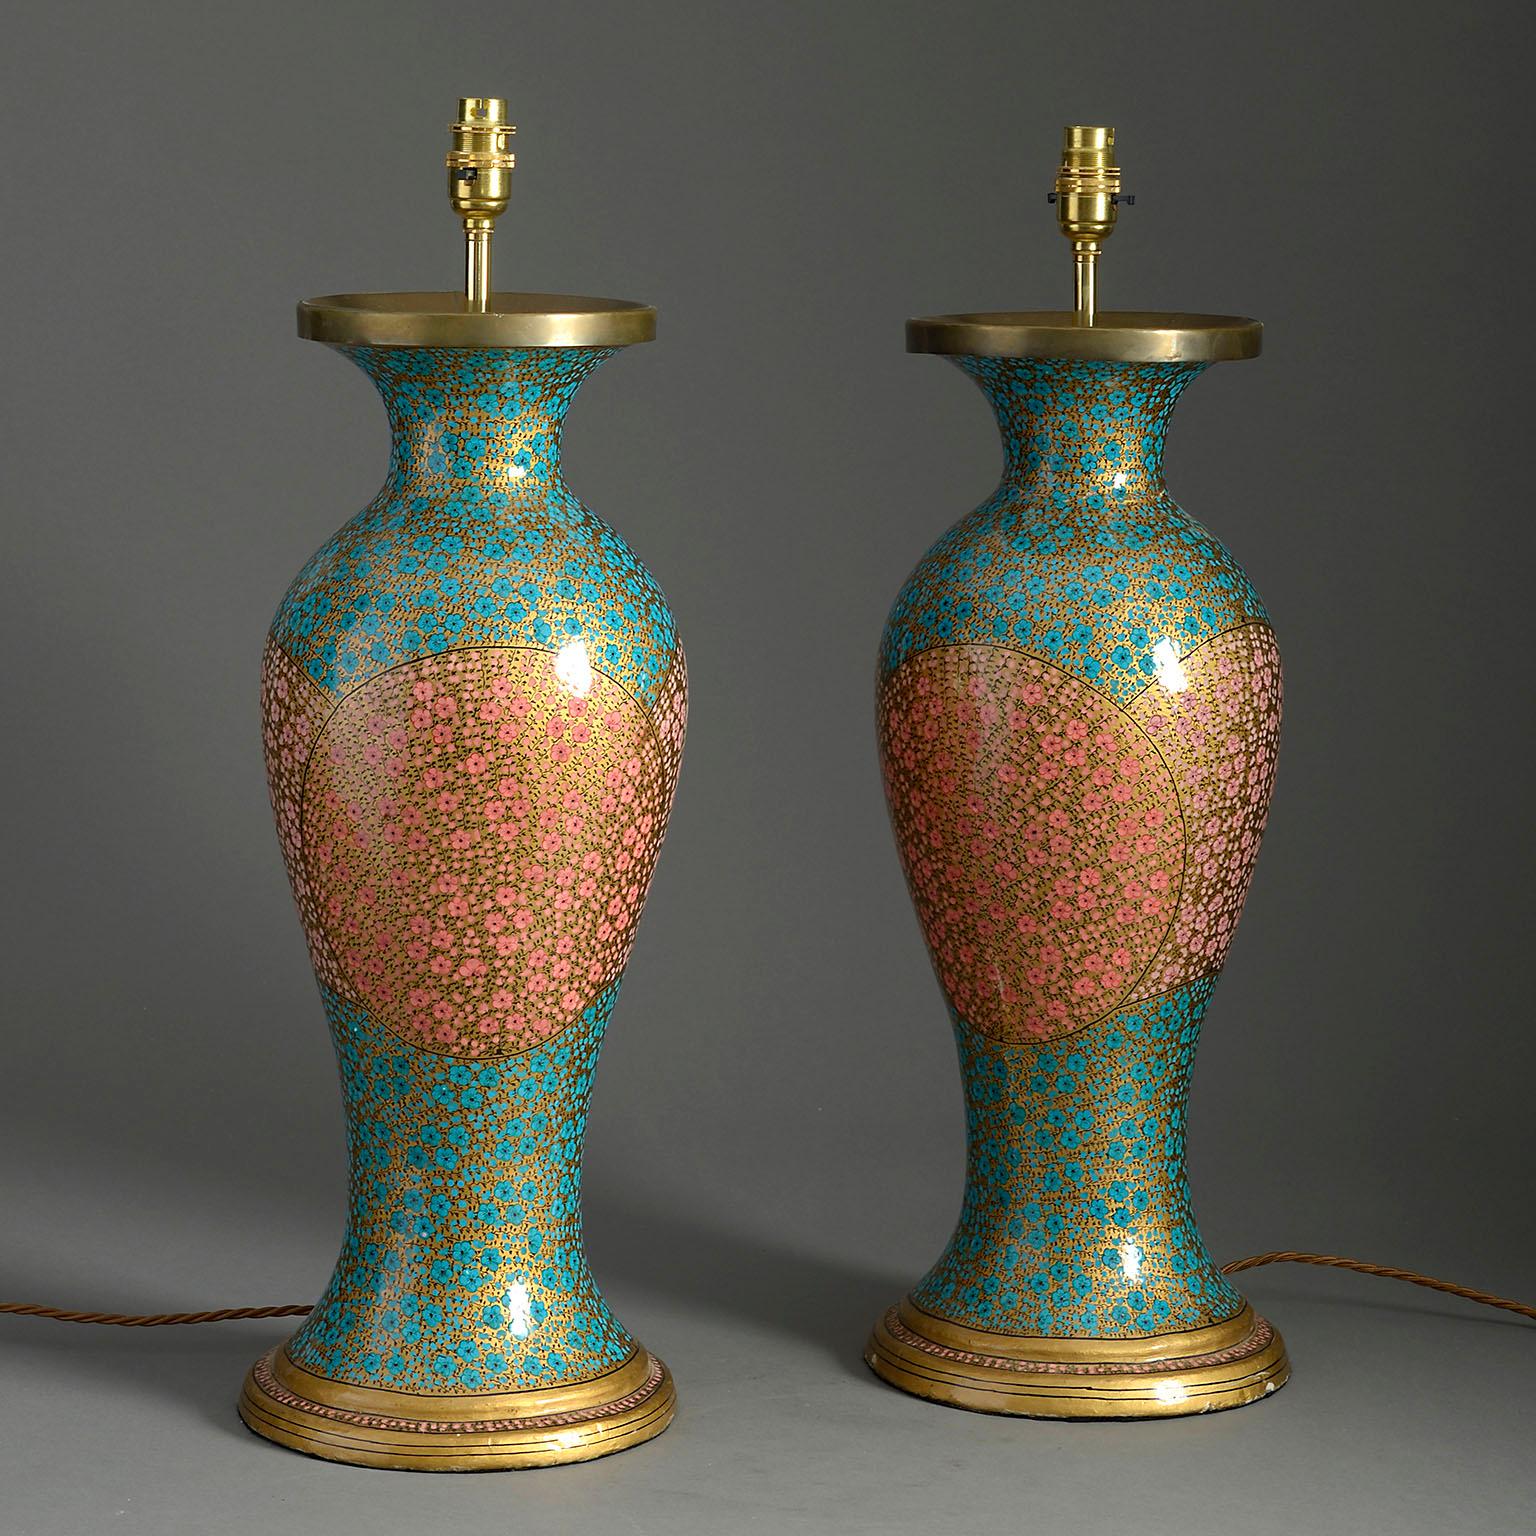 Ein Paar Tischlampen aus Kaschmirlack des frühen 20. Jahrhunderts in Balusterform, verziert mit vergoldeten Blüten auf türkis- und rosafarbenem Grund mit vergoldeten Sockeln.

Verkabelt nach britischem Standard. Diese Lampen können nach allen